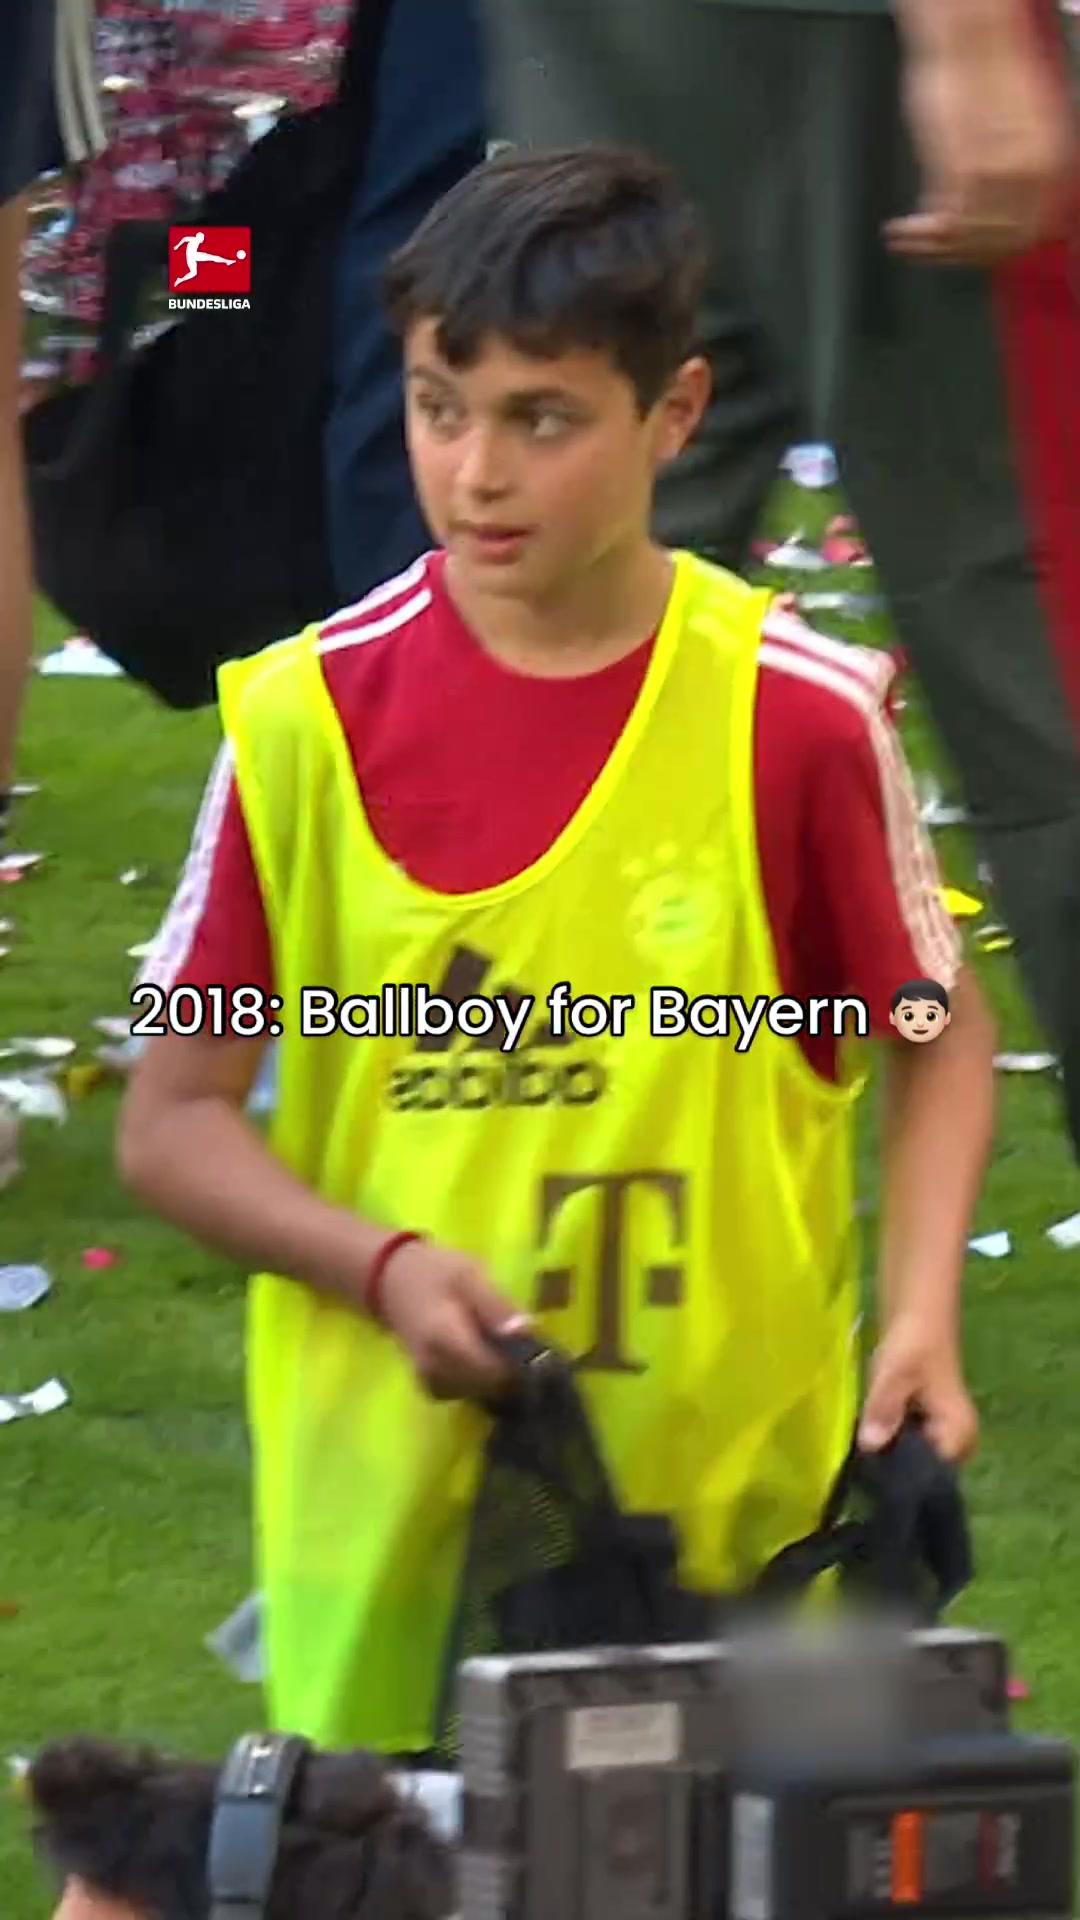 励志，六年前的安联小球童，如今已成为德国国家队一员